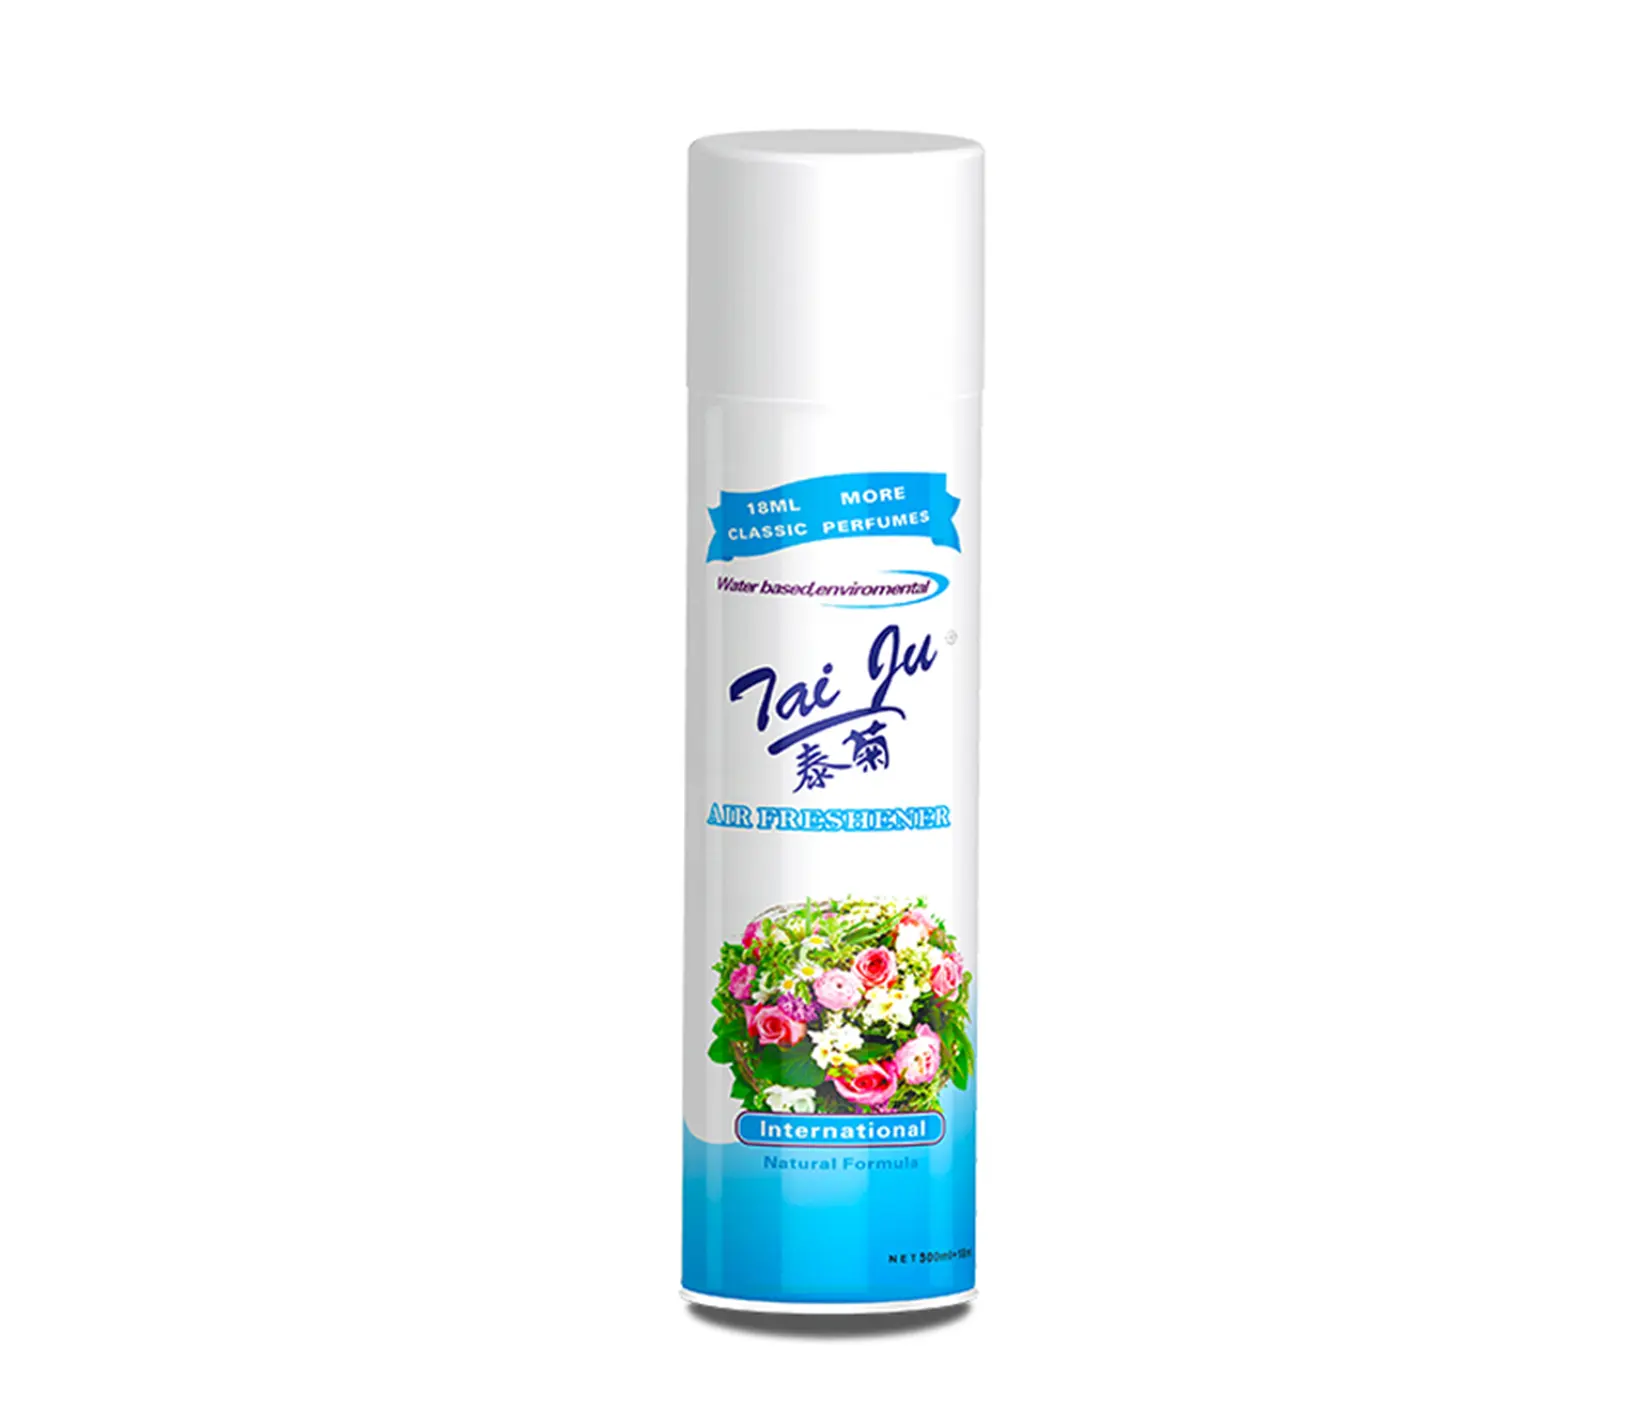 Africa private label Lavender Aroma scent dubai 250ml Deodorant Toilet Home Car Mini Air Freshener Aerosol Spray